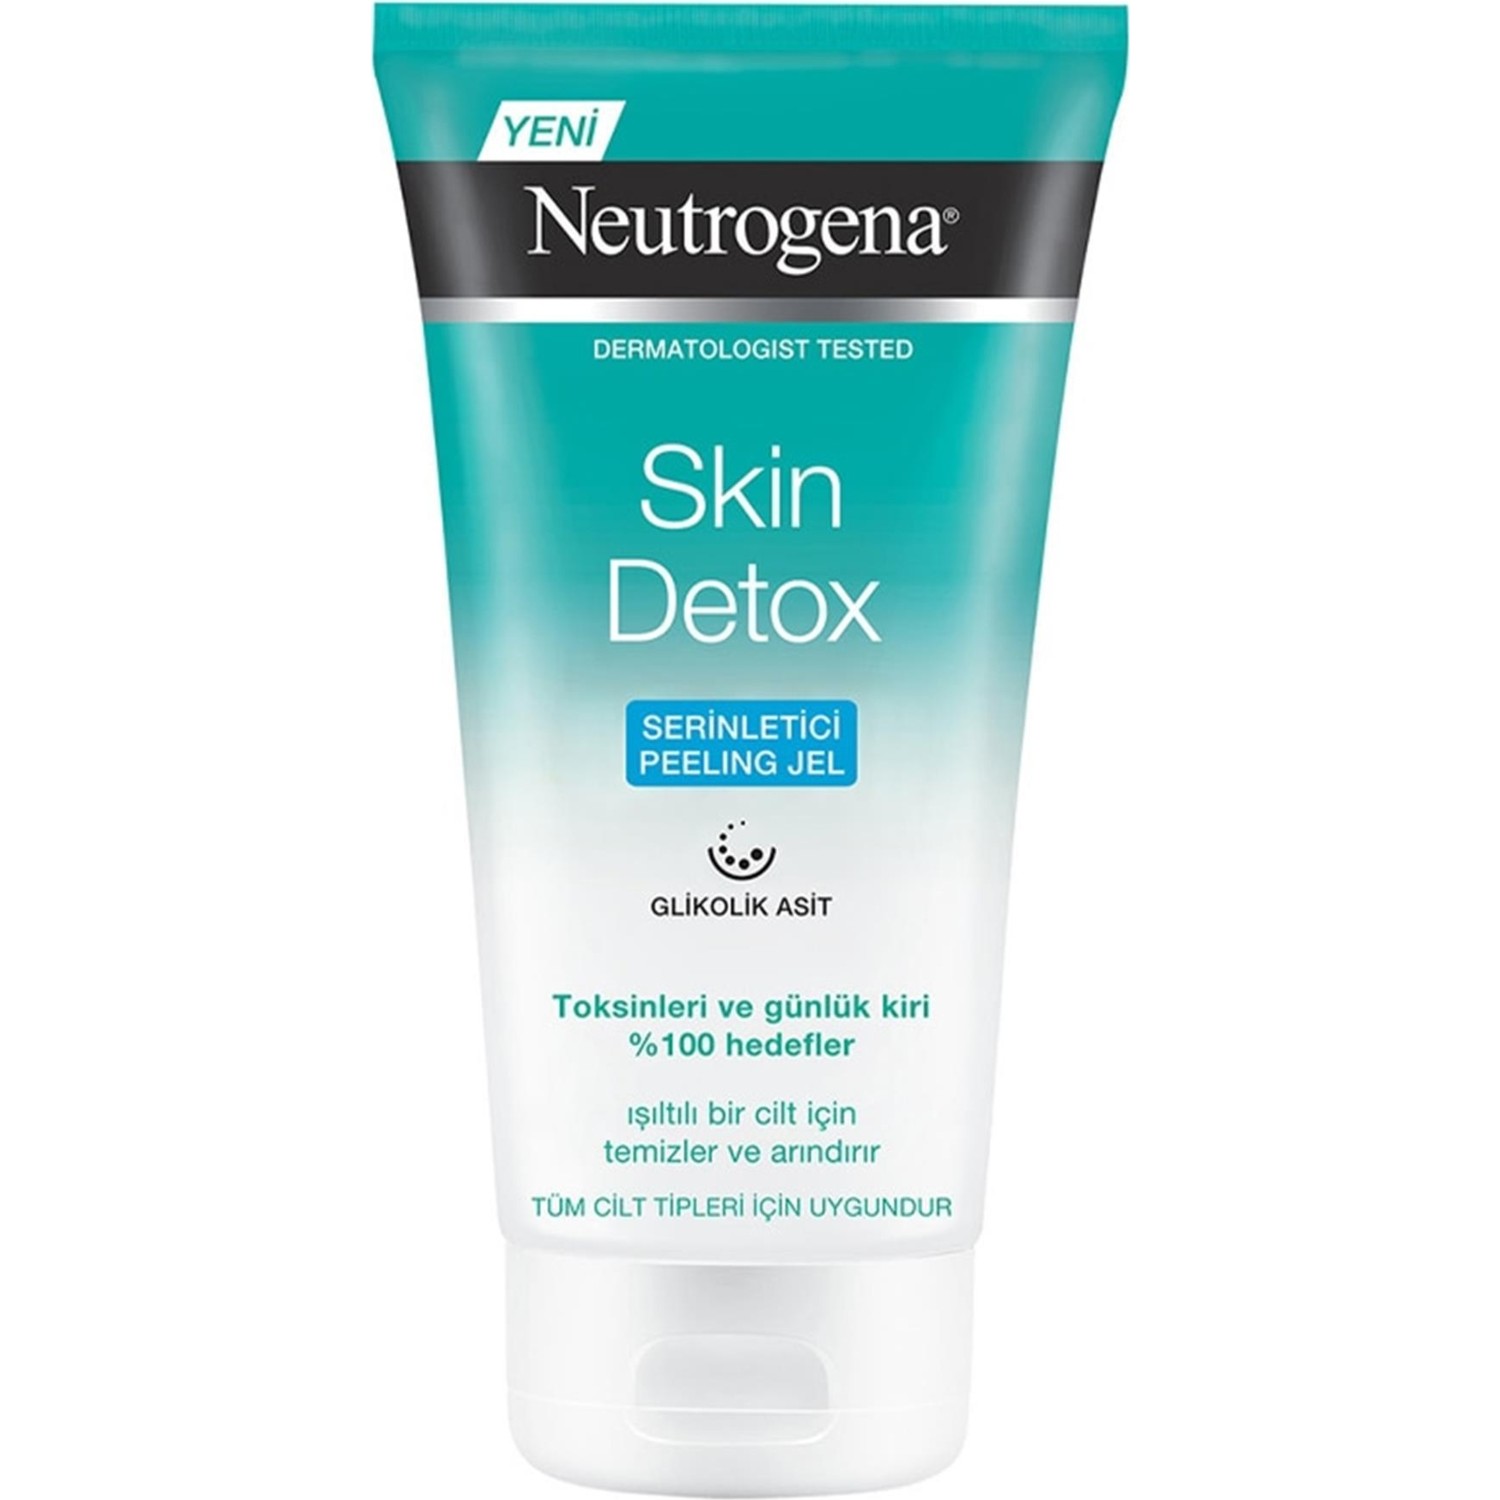 Освежающий гель-пилинг Neutrogena Skin Detox, 150 мл освежающий пилинг гель neutrogena skin detox 150 мл 2 шт